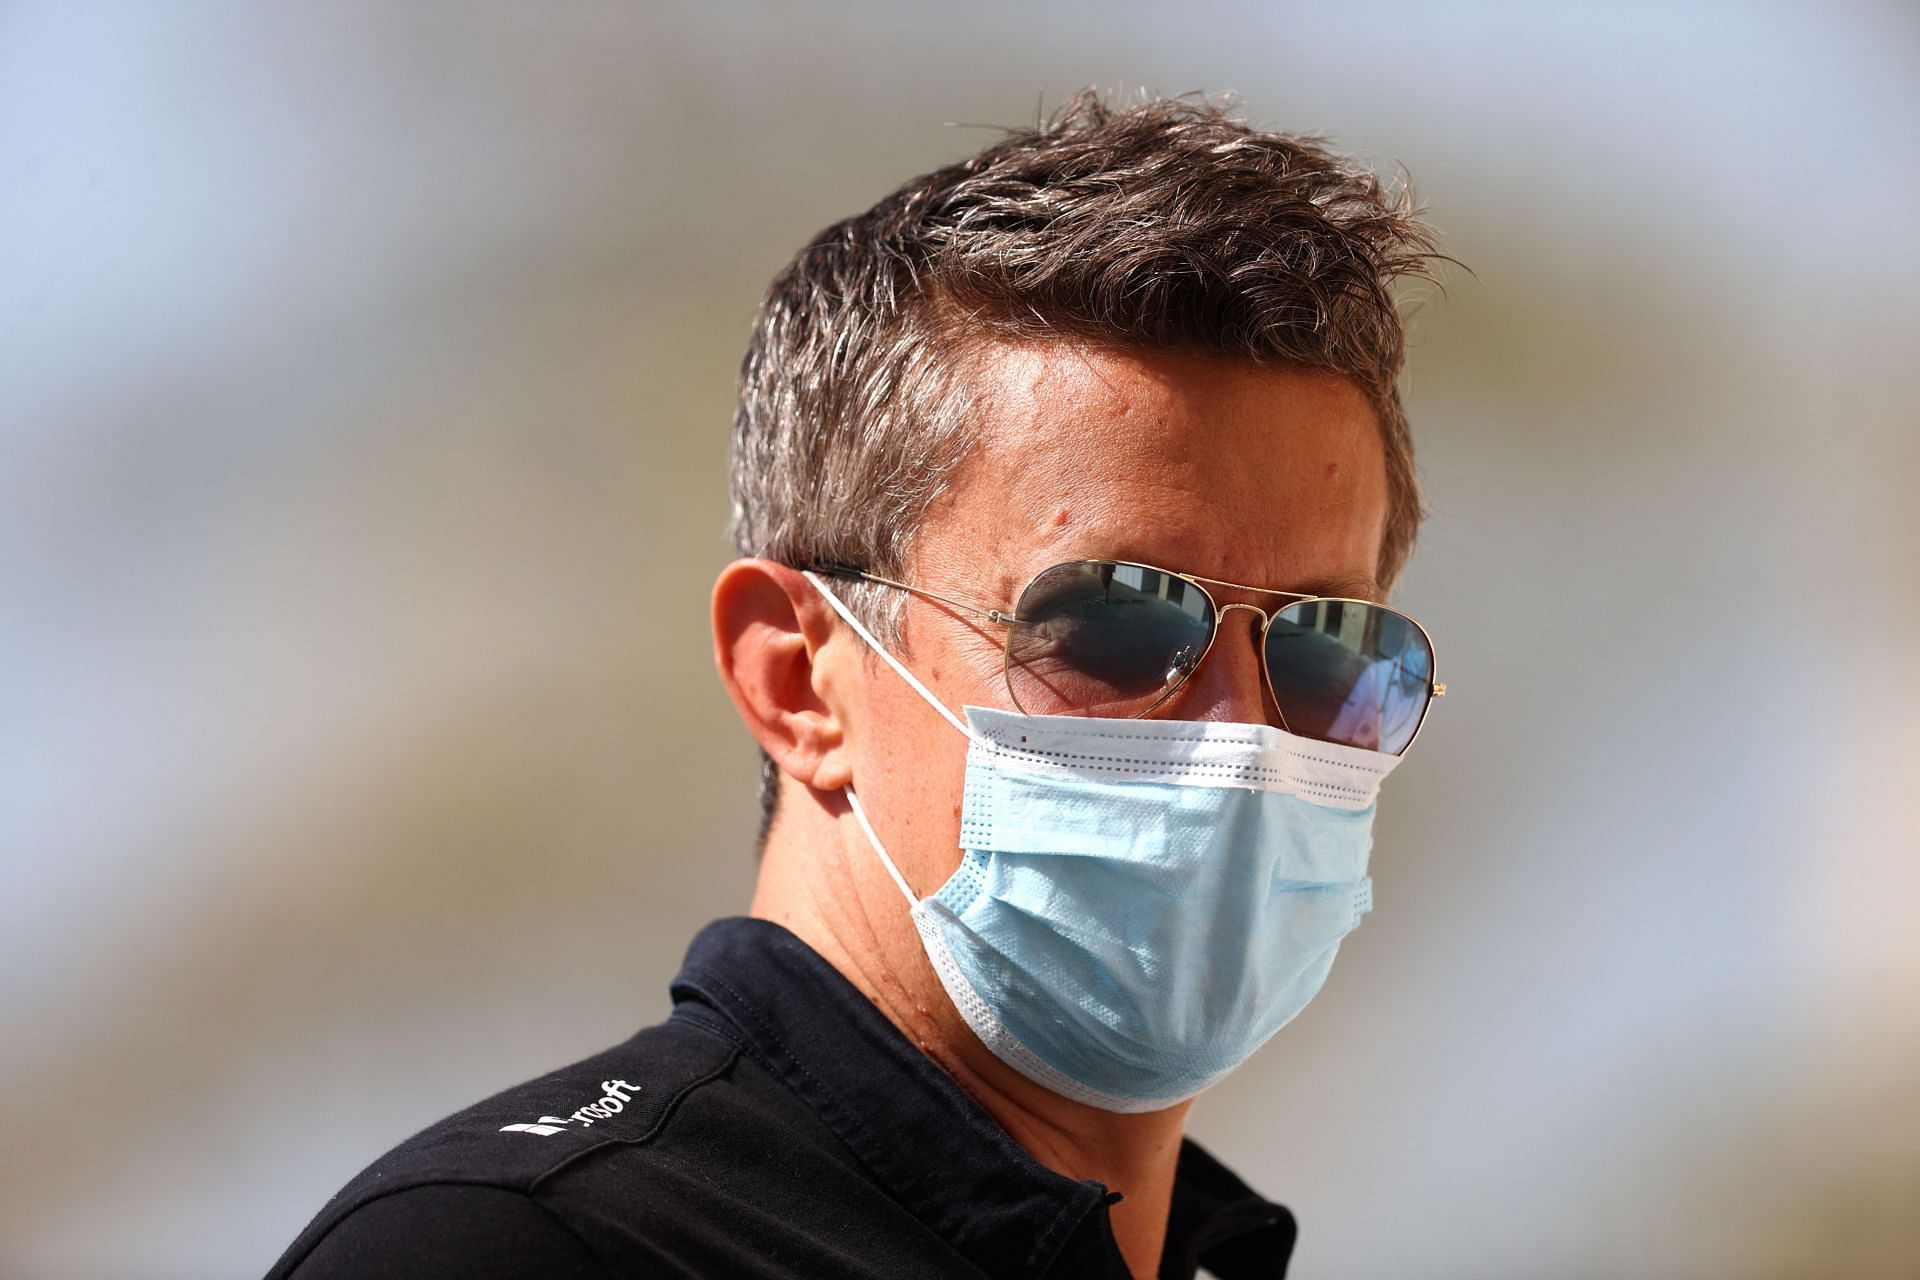 F1 Grand Prix of Abu Dhabi - Marcin Budkowski arrives in Abu Dhabi.